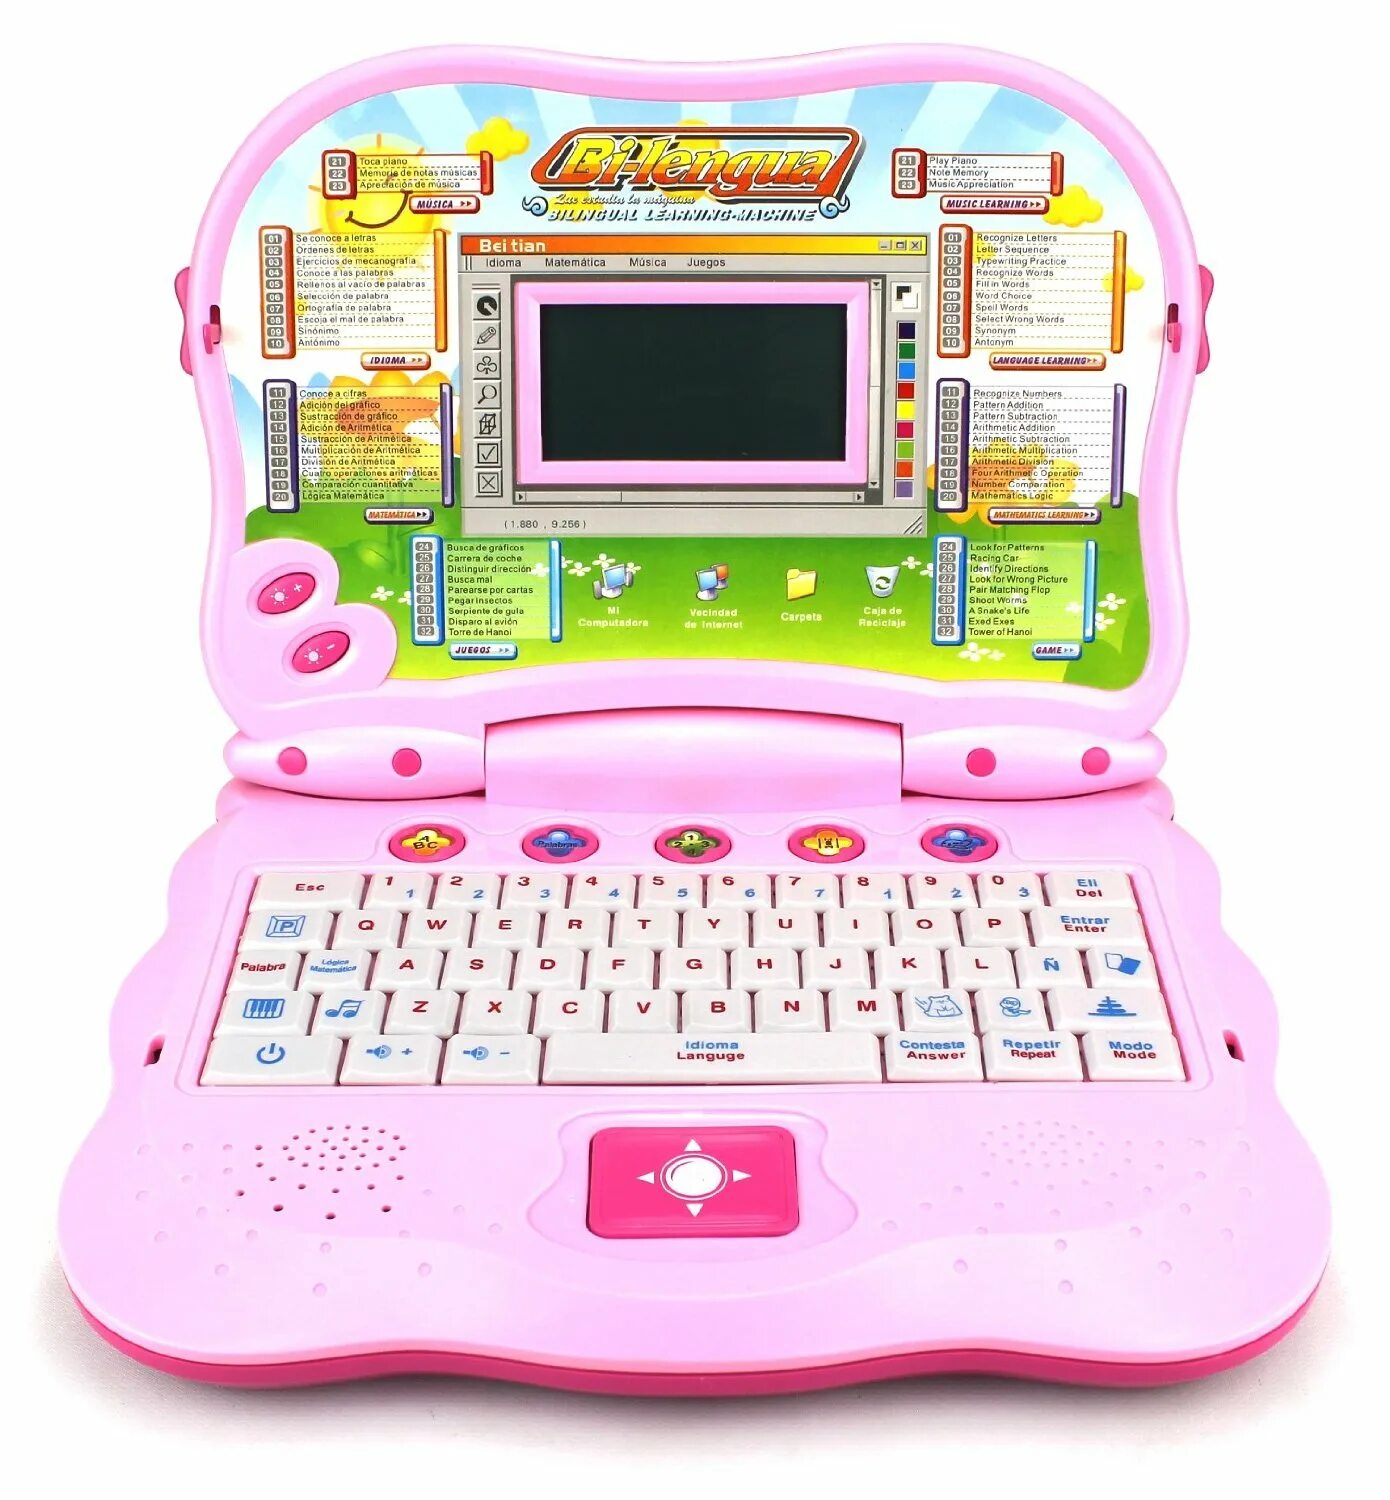 Fun 32. 1toy ноутбук т50308. Игрушечный компьютер. Игрушечный ноутбук для детей. Детский компьютер.